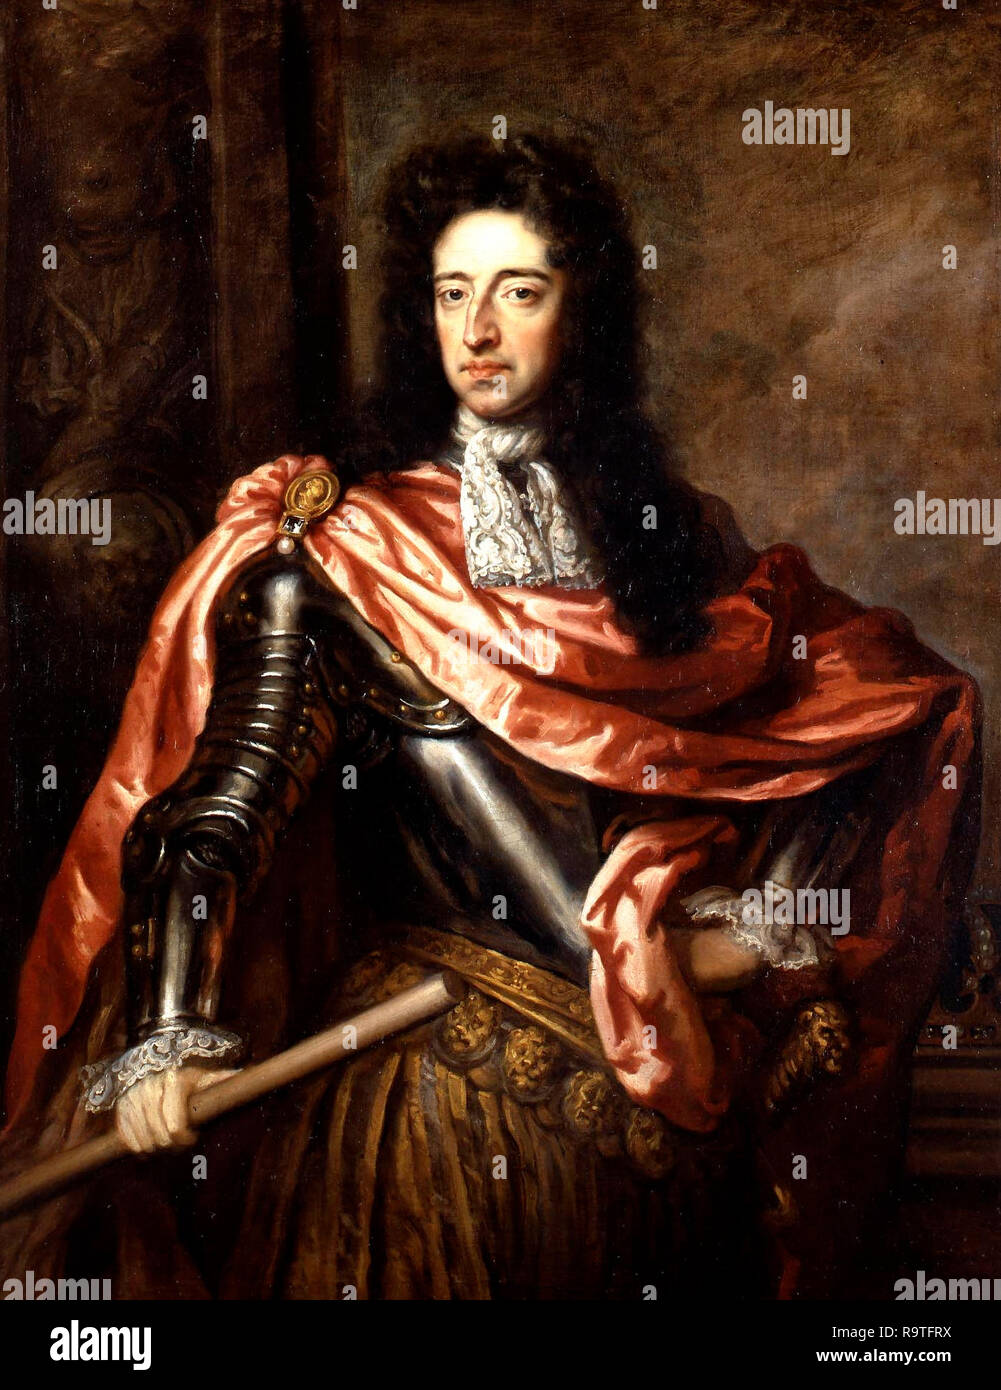 Ritratto di Re Guglielmo III (1650-1702) - Godfrey Kneller, circa 1680s Foto Stock